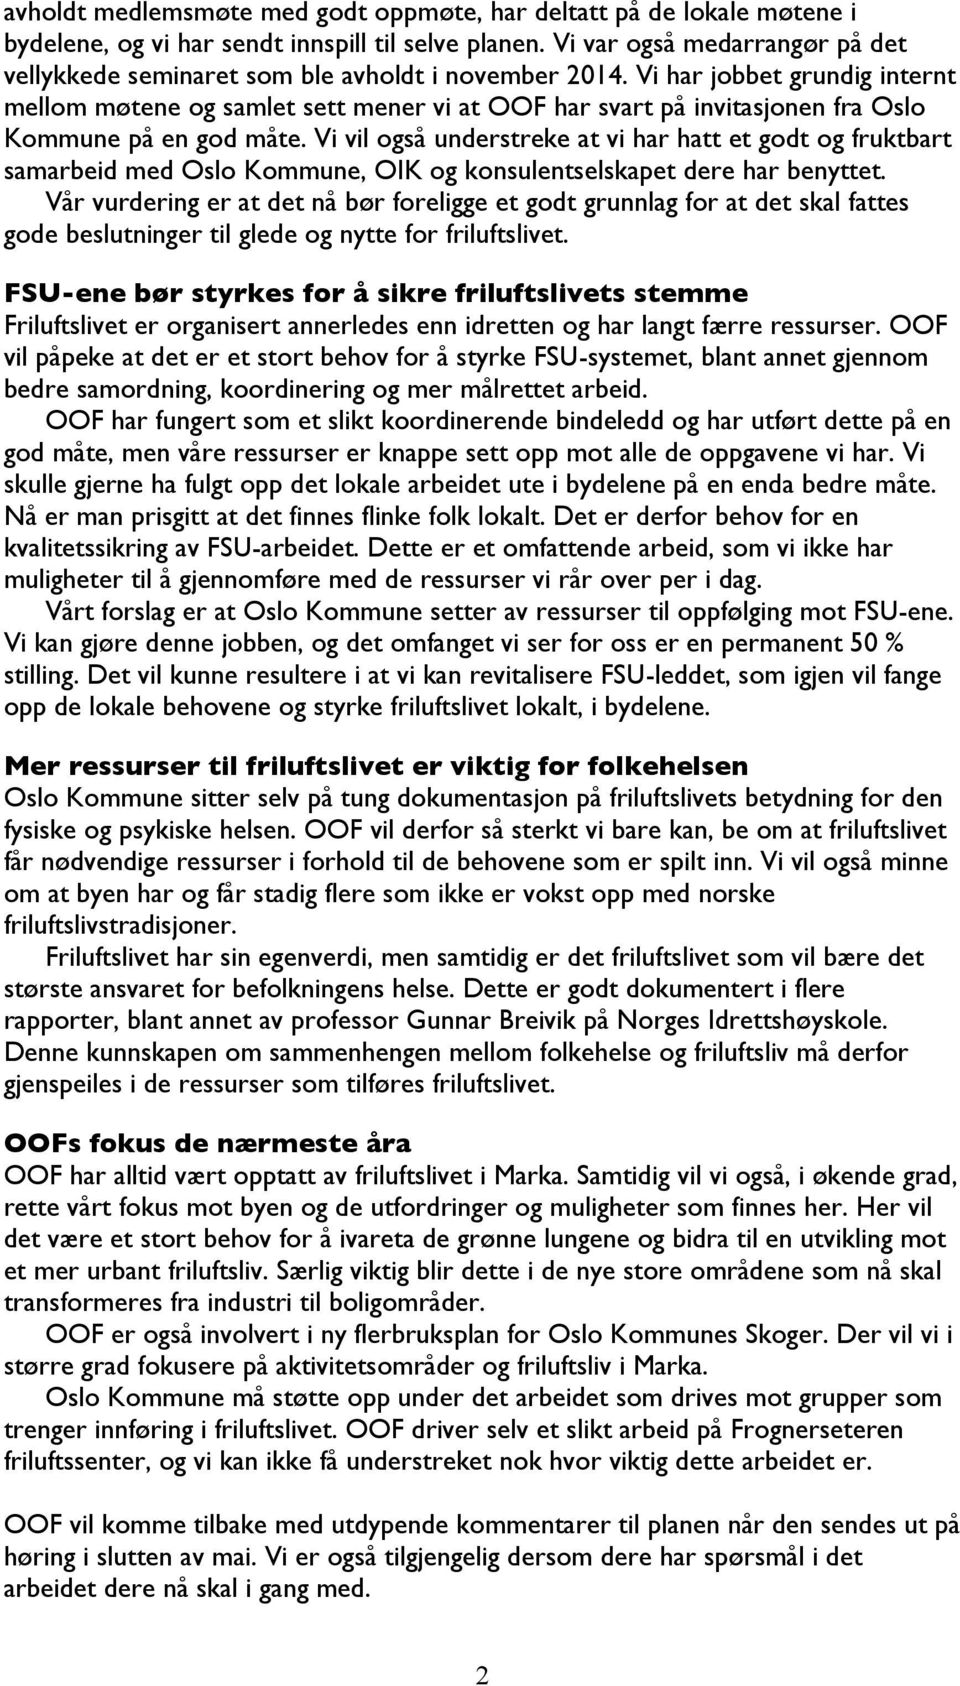 Vi har jobbet grundig internt mellom møtene og samlet sett mener vi at OOF har svart på invitasjonen fra Oslo Kommune på en god måte.